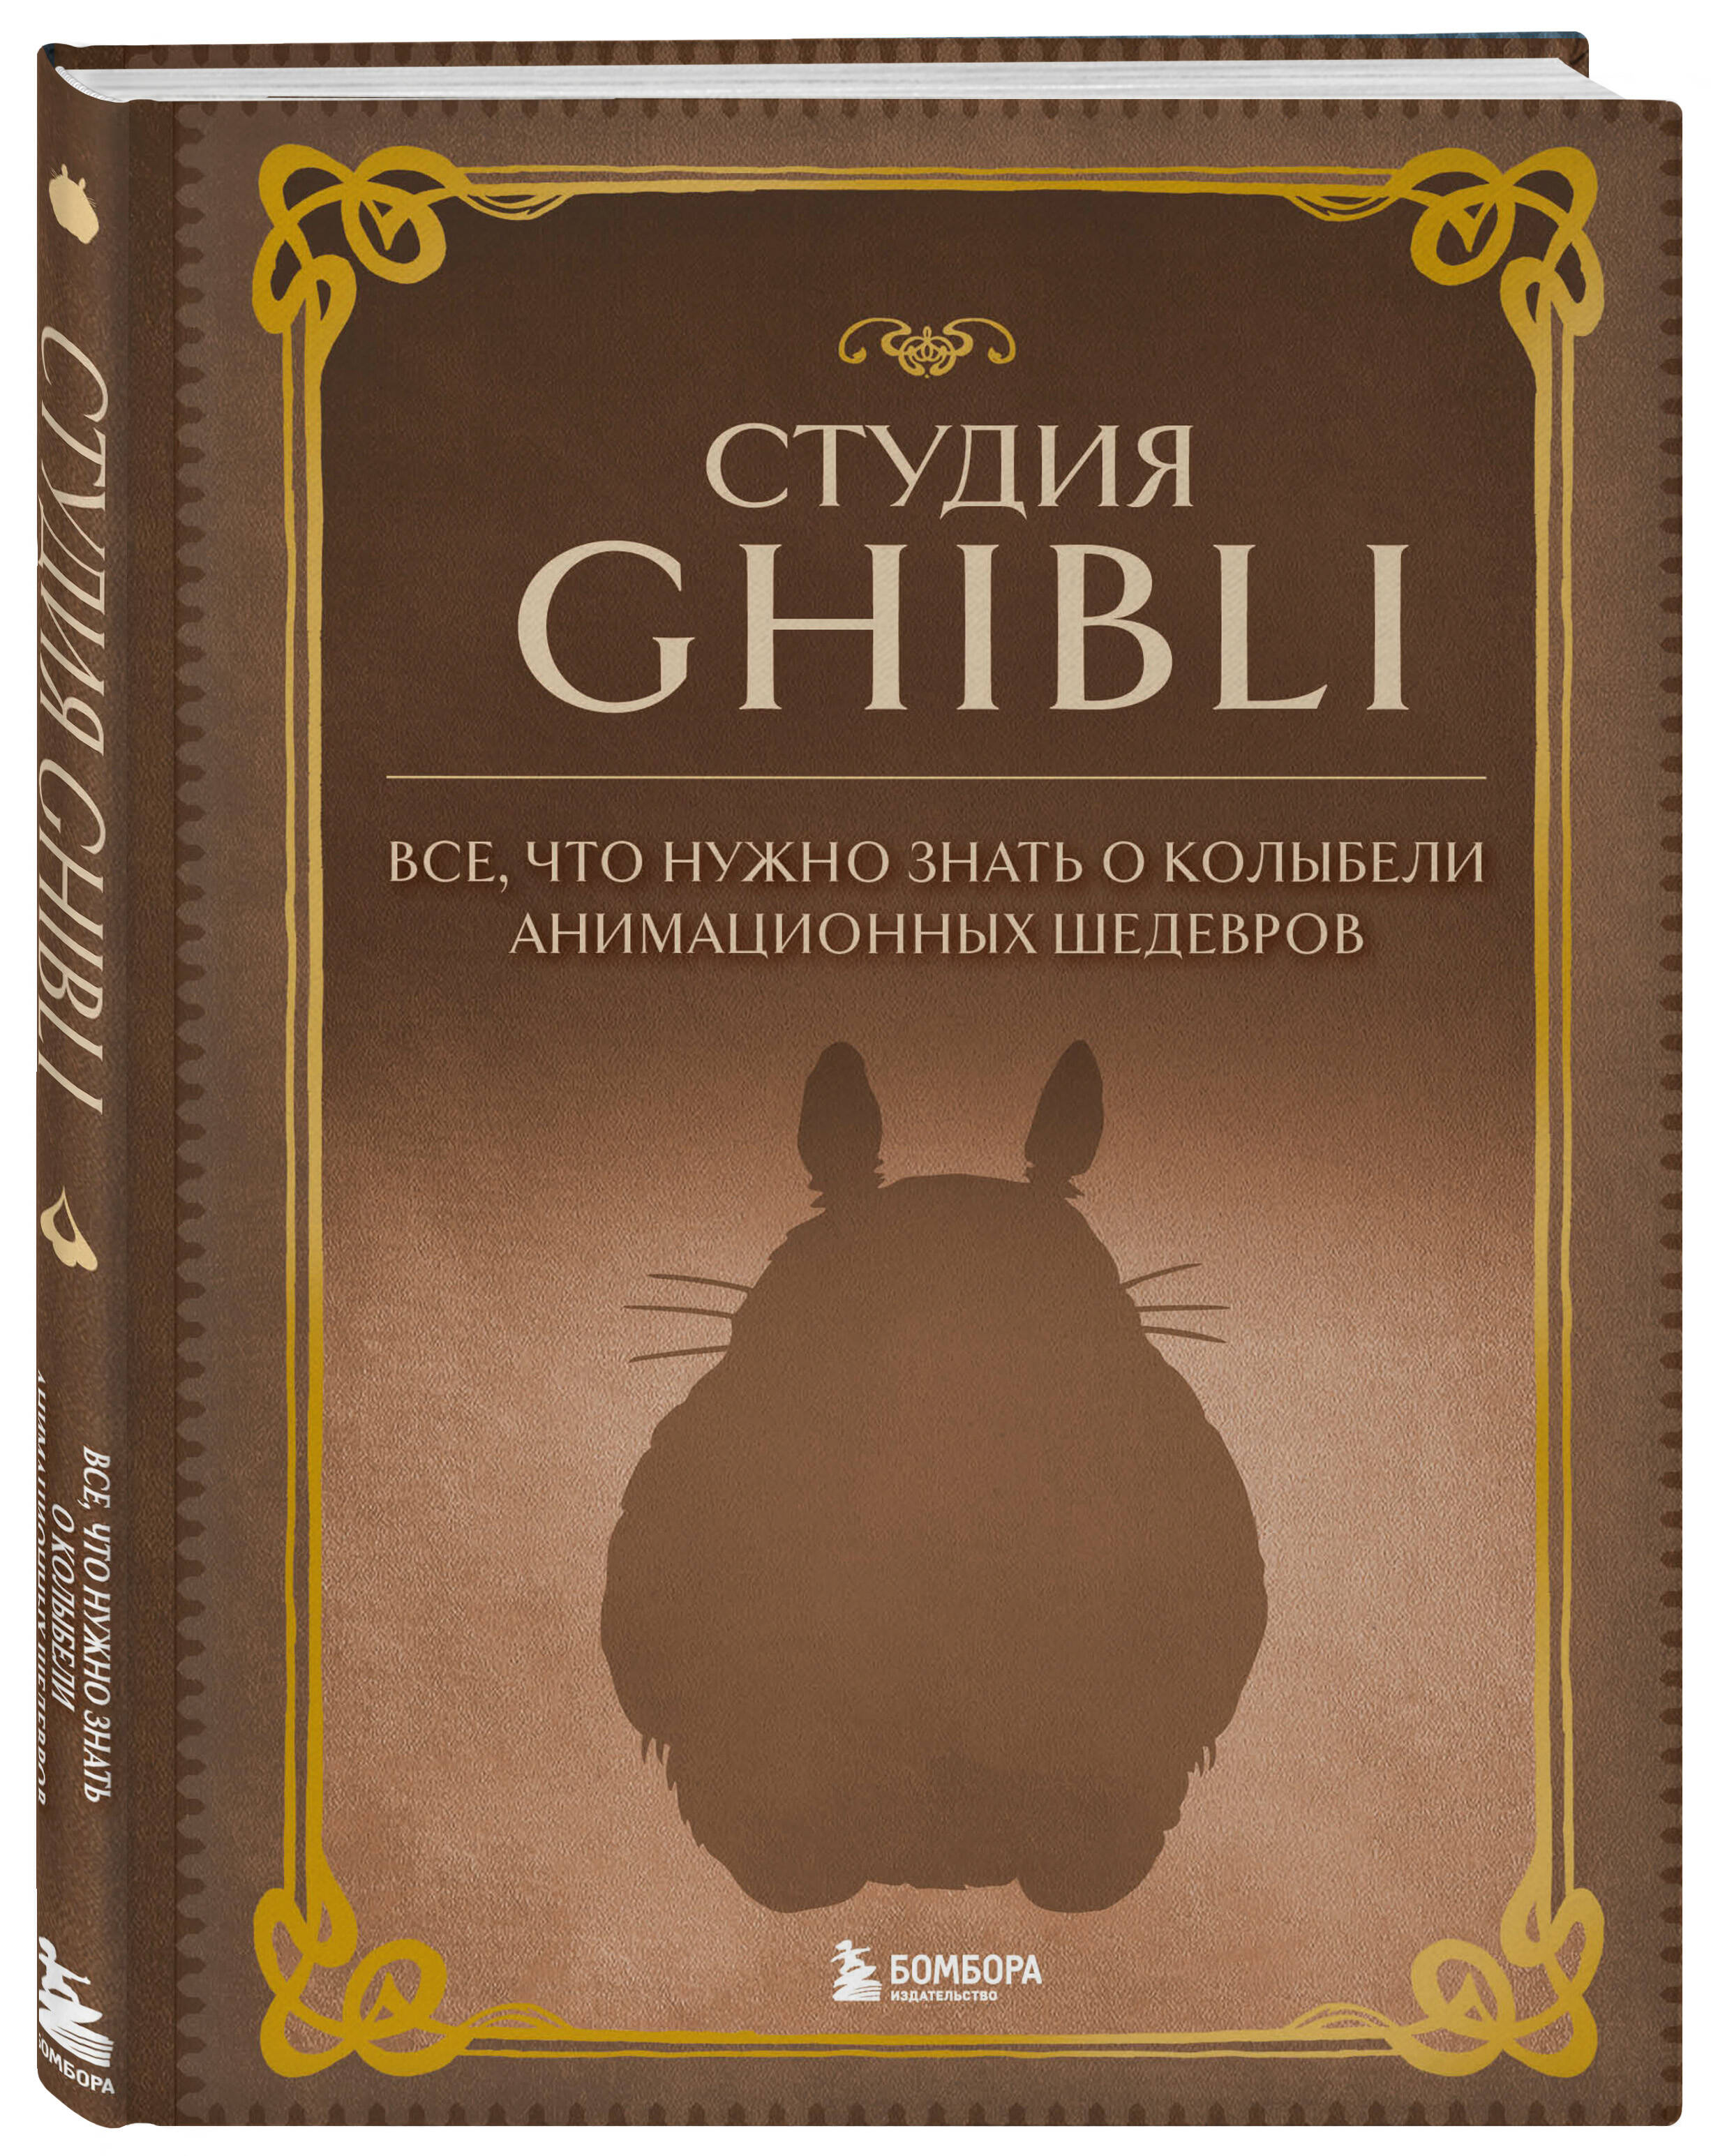 Купить гибли. Книжка гибли. Шедевры анимации. Книга студия Ghibli купить. Книга рецептов гибли.